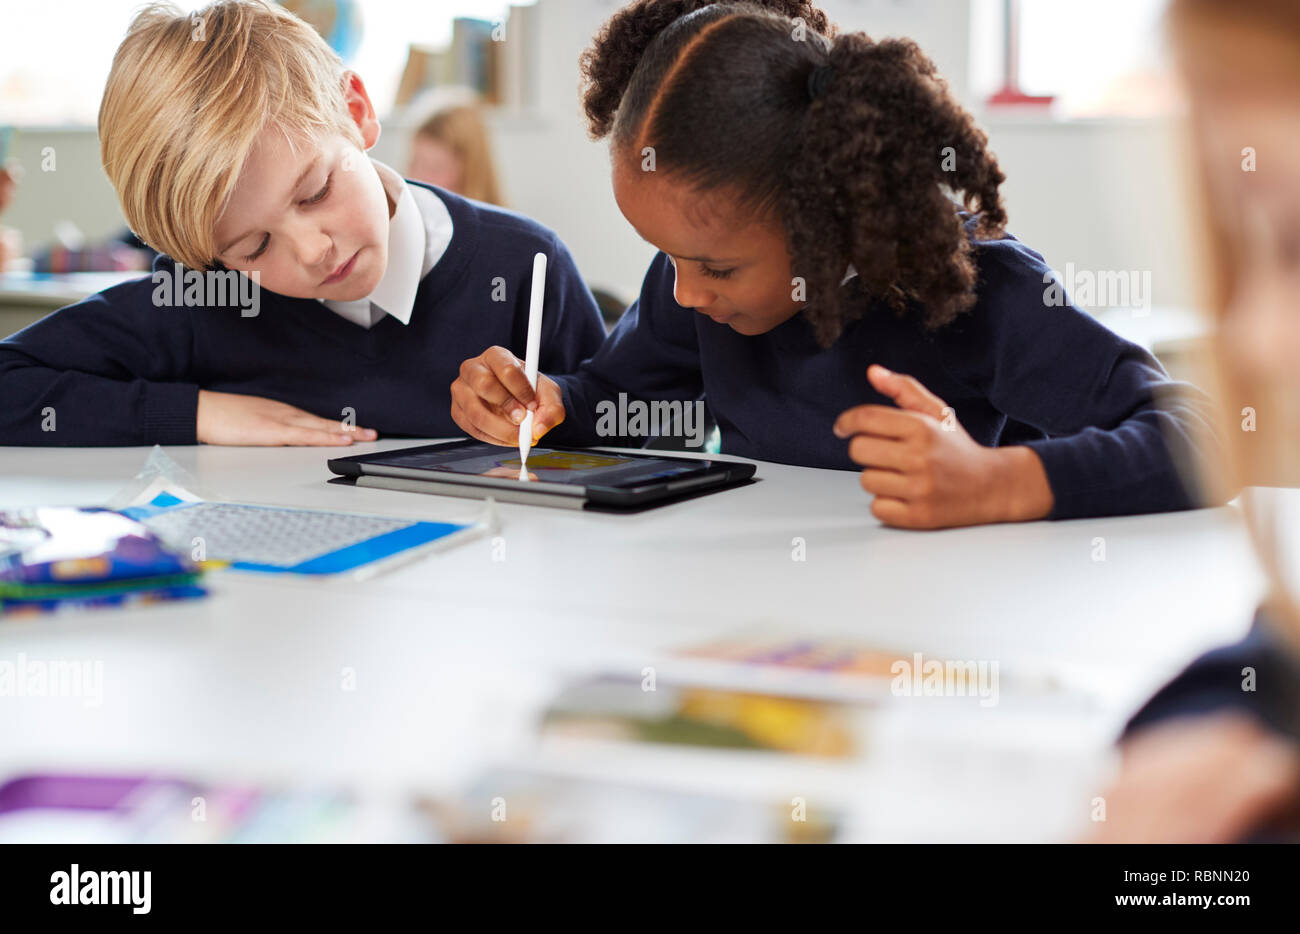 Schoolgirl utilizzando una tavoletta e penna stylus seduta con un ragazzo su una scrivania in una scuola primaria in aula, il fuoco selettivo Foto Stock